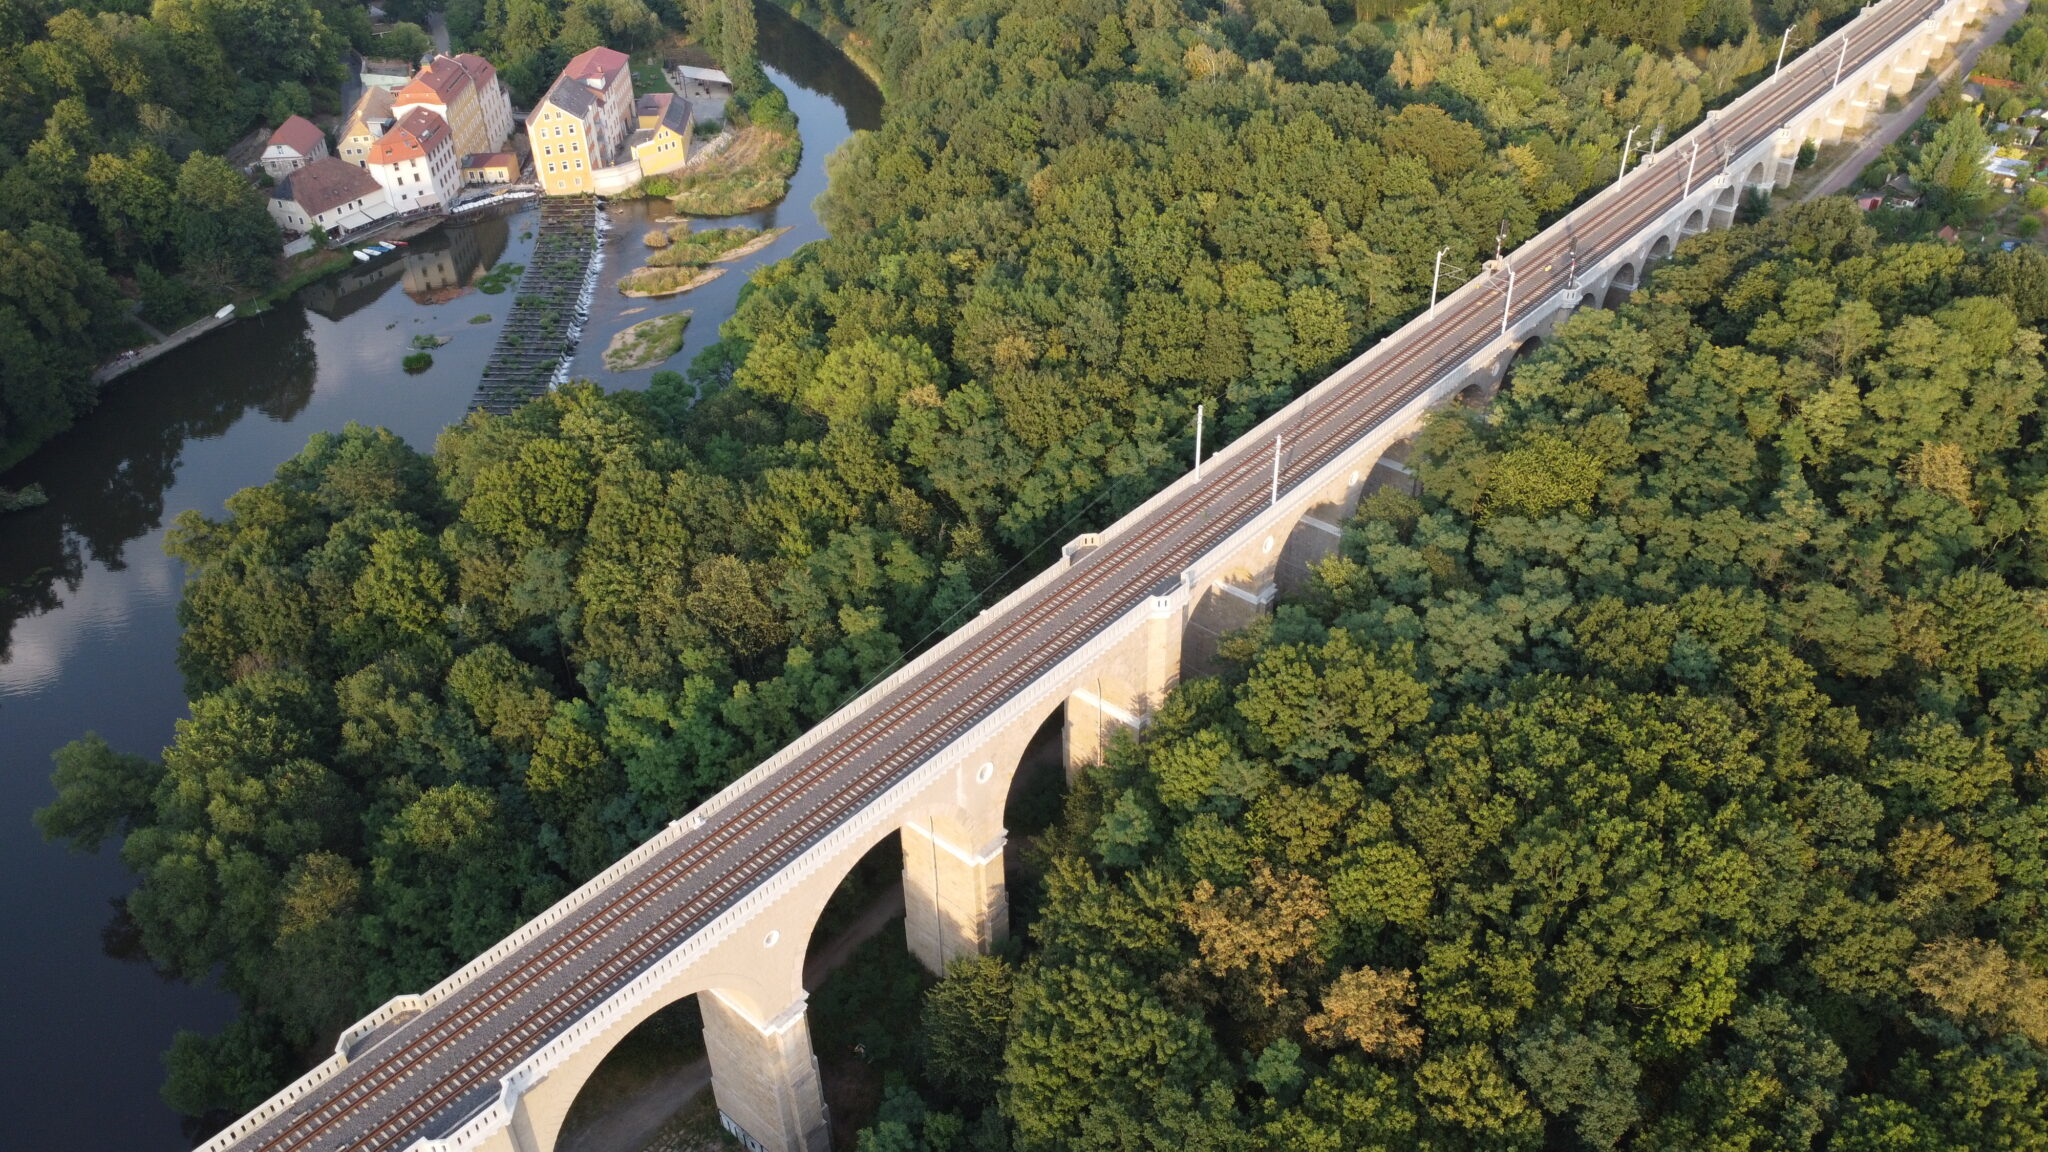 Grenzbrücke zwischen Zgorzelec (Polen) und Görlitz (Deutschland) - beachte, wo die Masten auf der Brücke enden